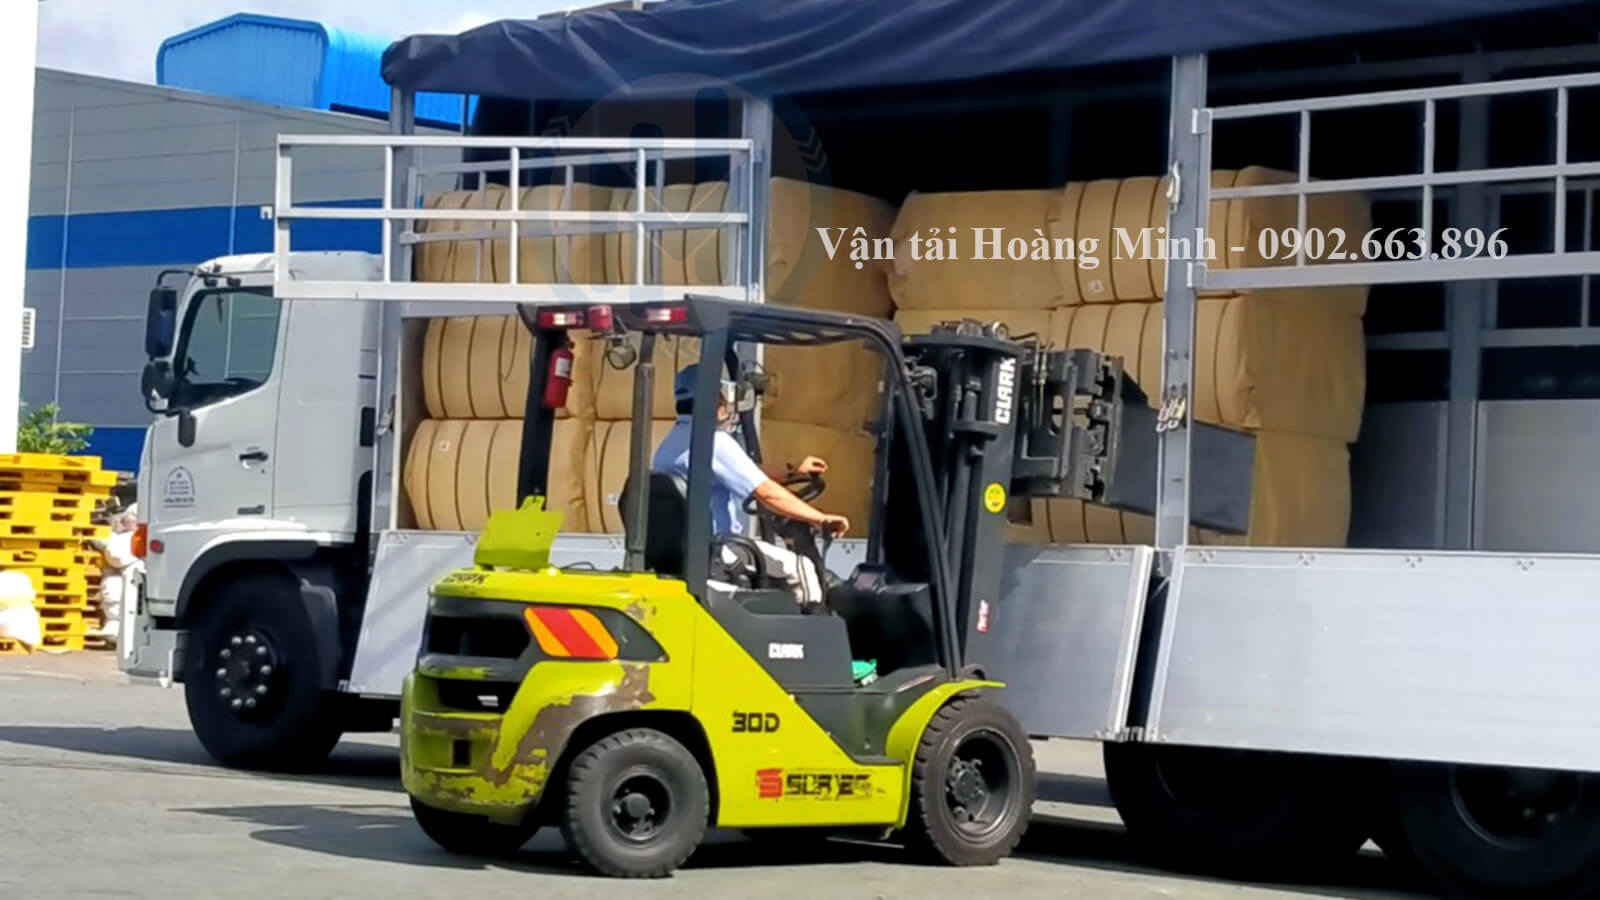 Hình ảnh nhân viên sử dụng xe nâng di dời hàng hoá lên xe tải để chở hàng cho khách tại Vĩnh Long đi nơi khác.jpg